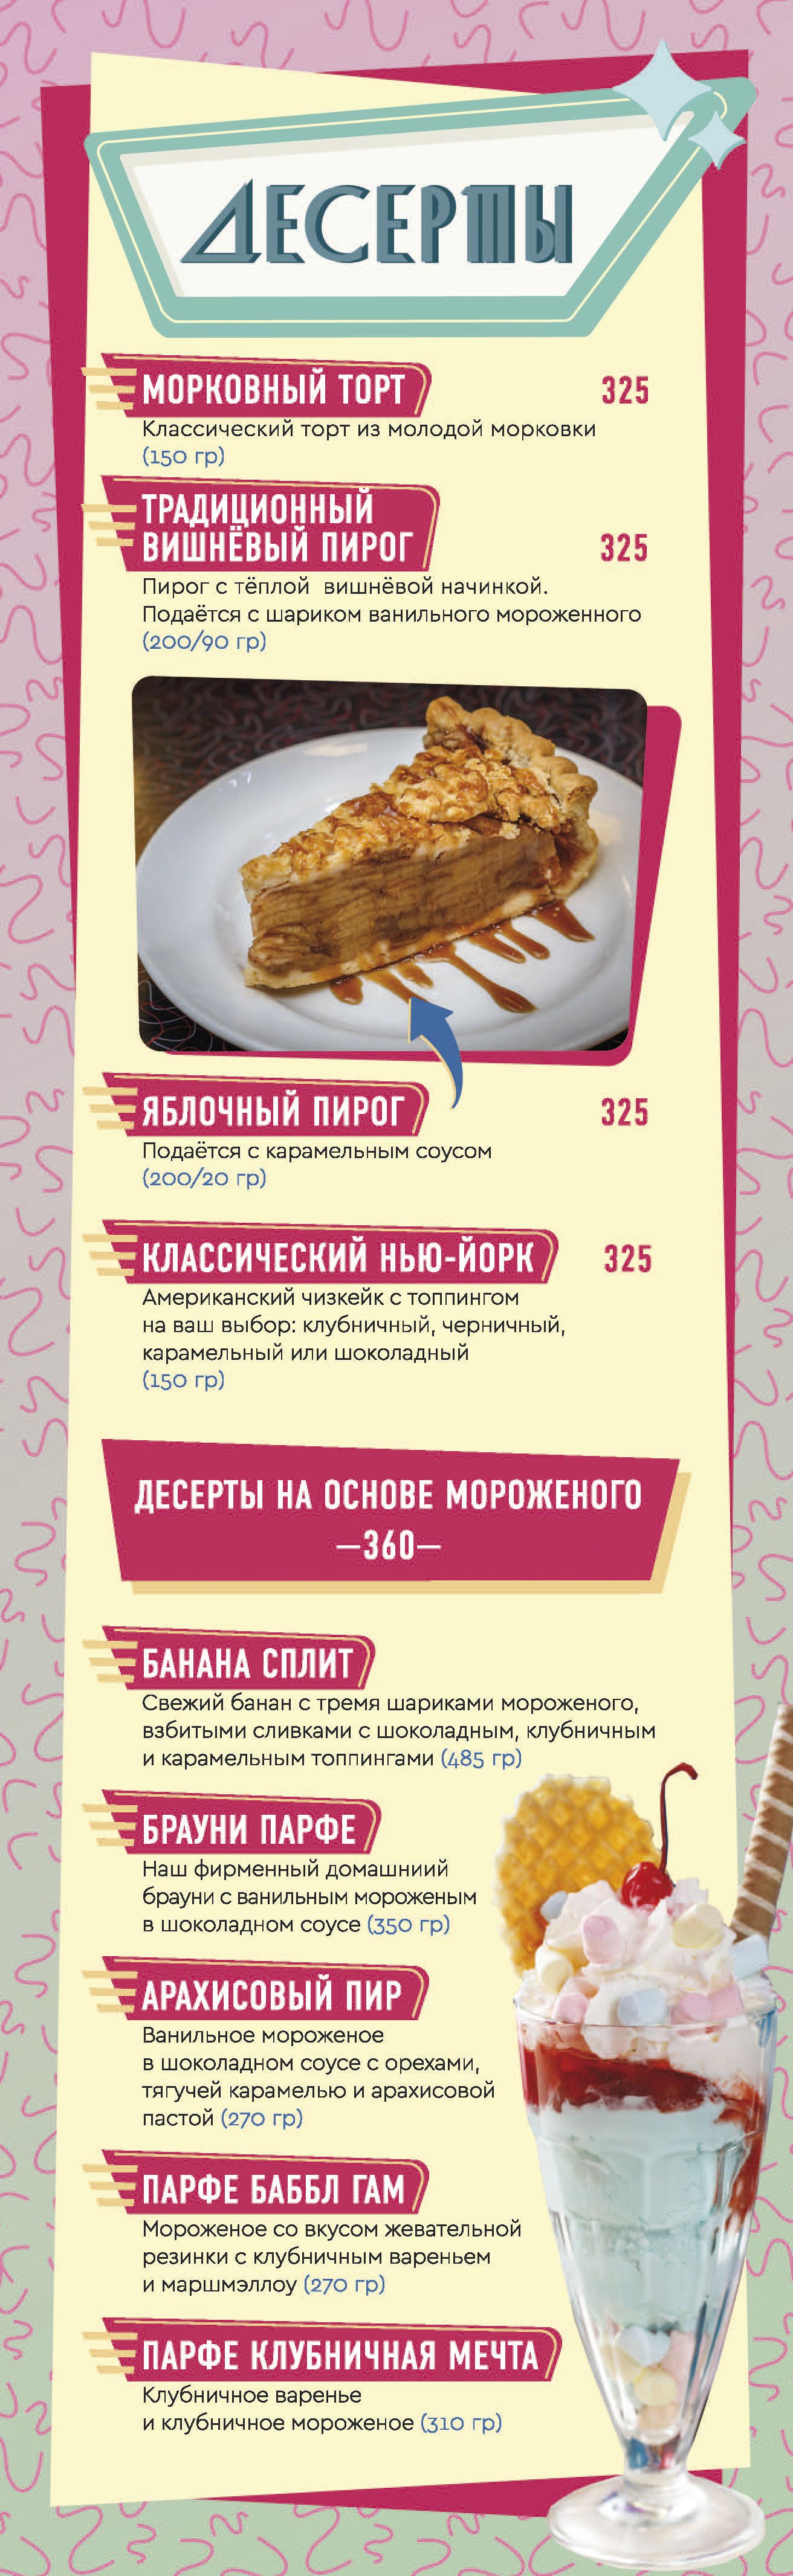 desserts_menu